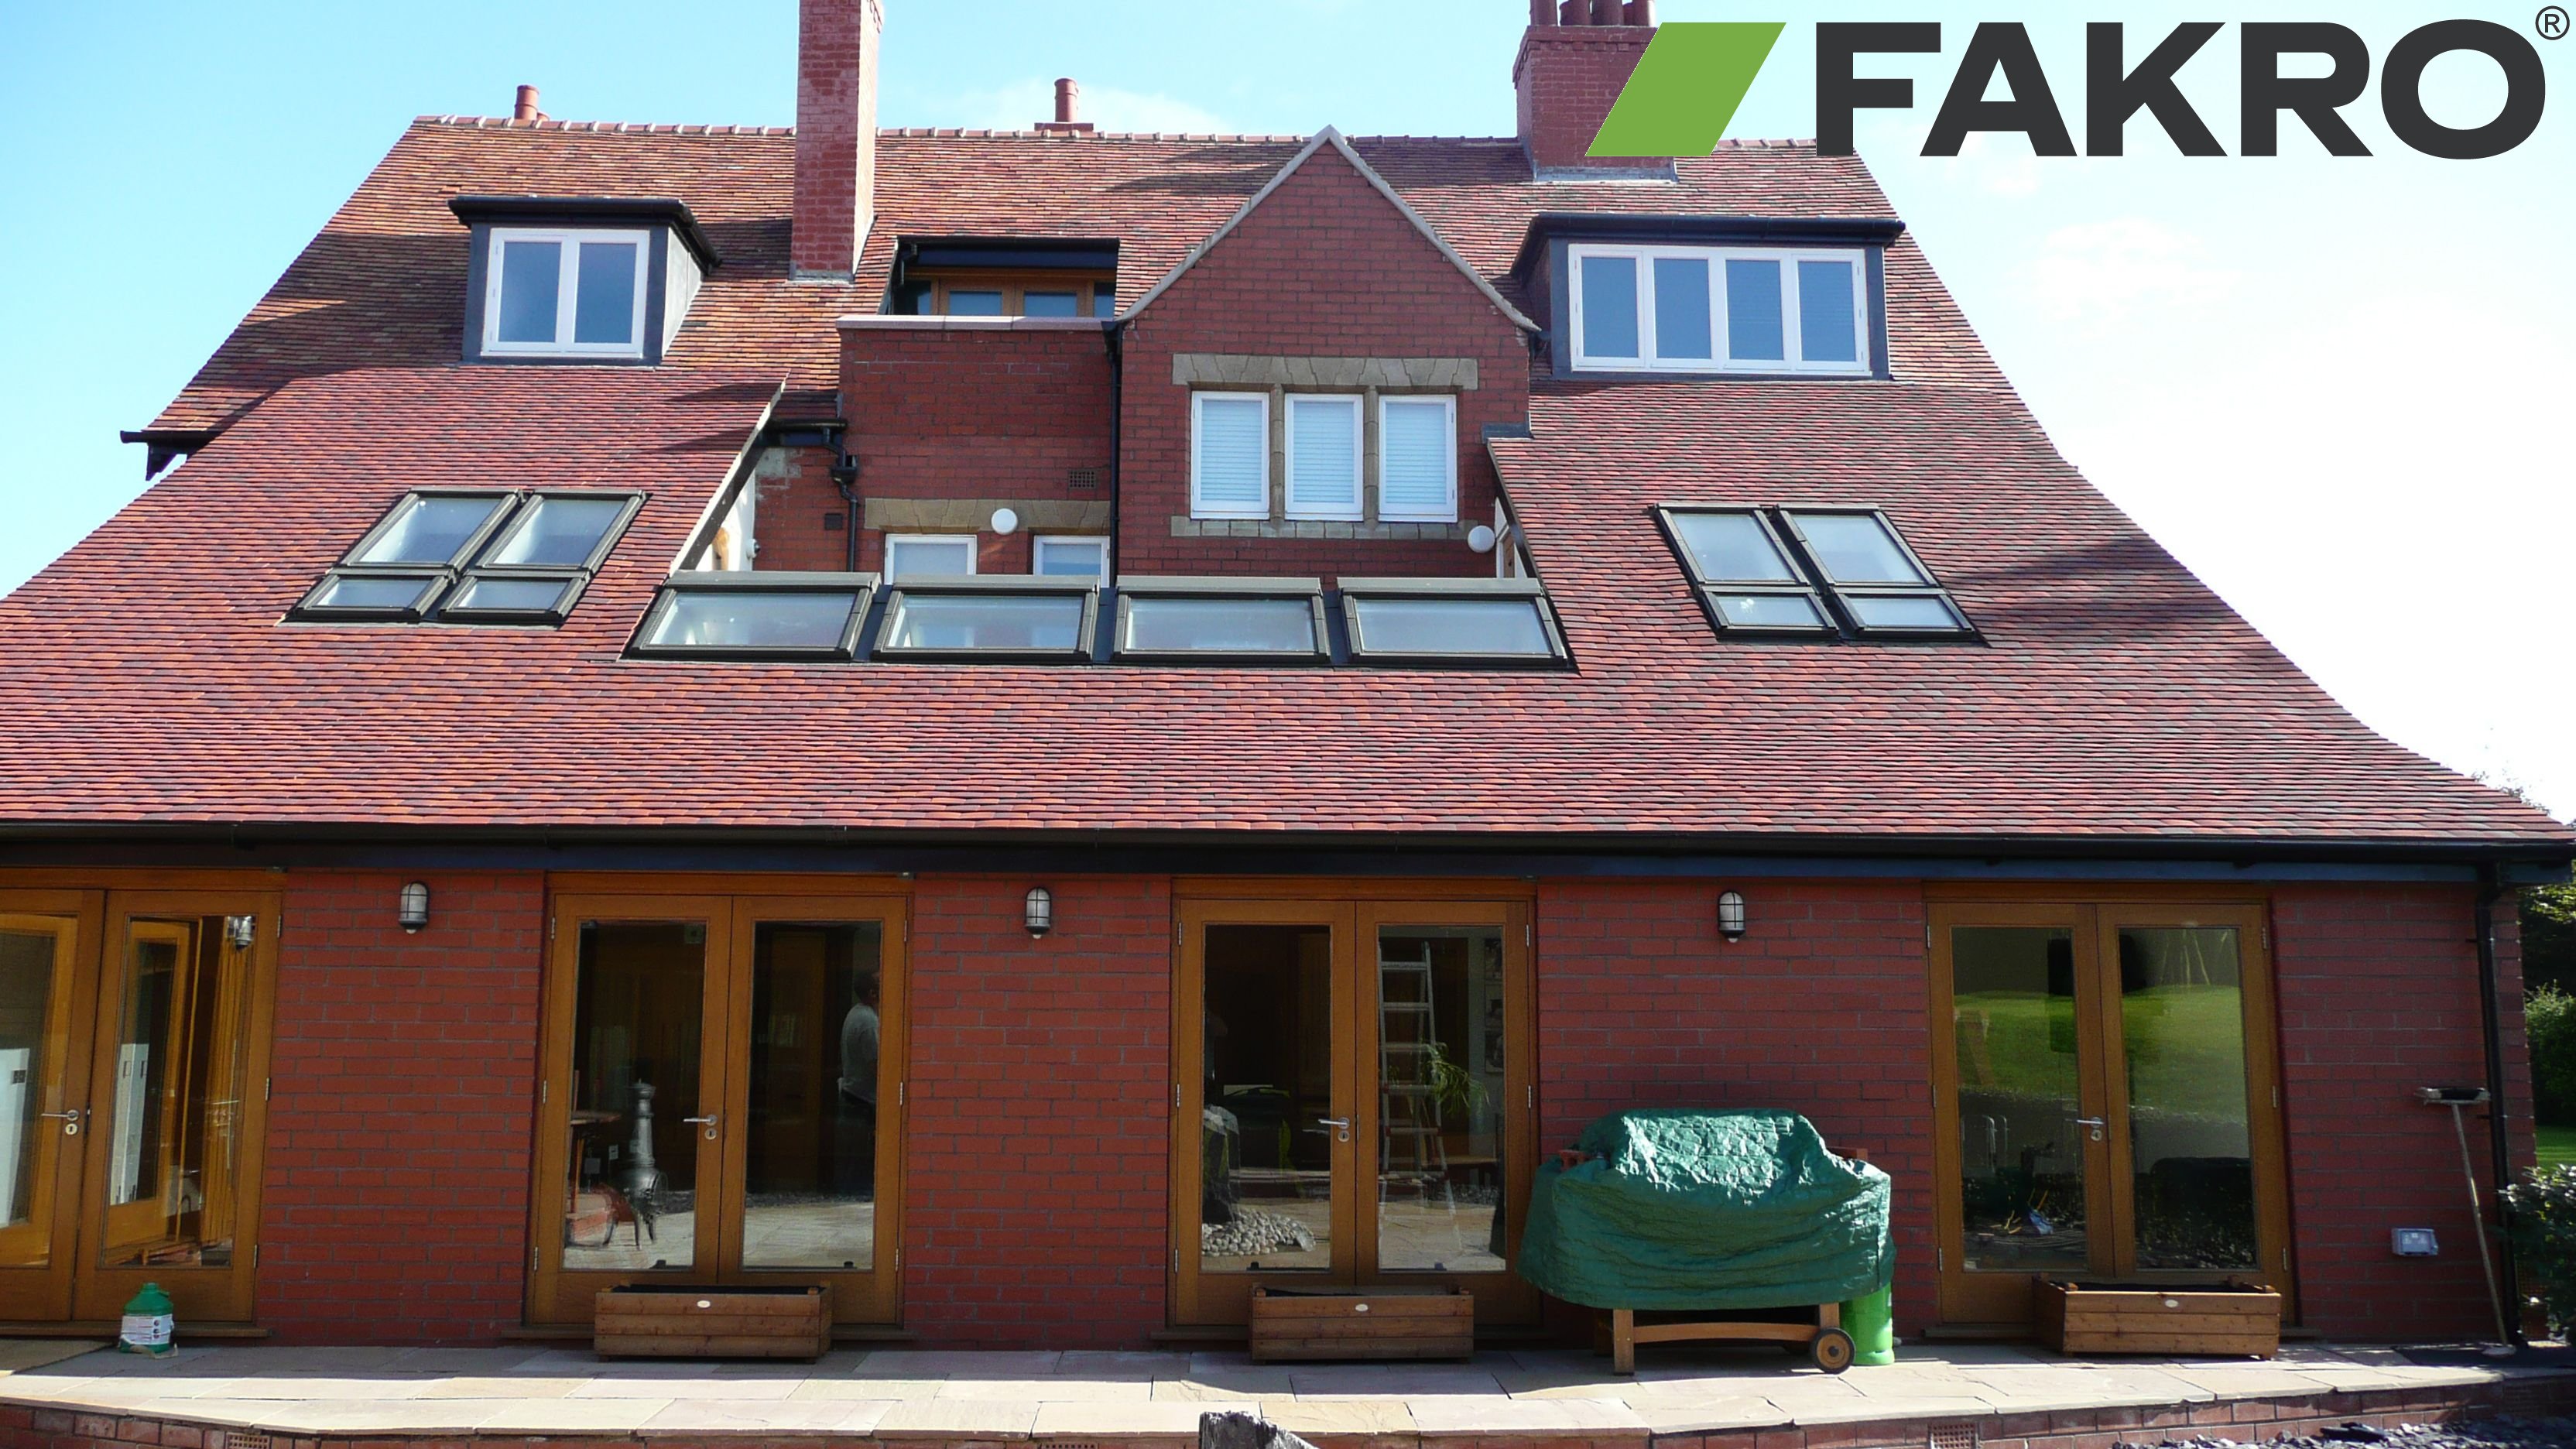 FAKRO（法克罗）-全球专业的斜屋顶天窗领导品牌   www.fakro58.com